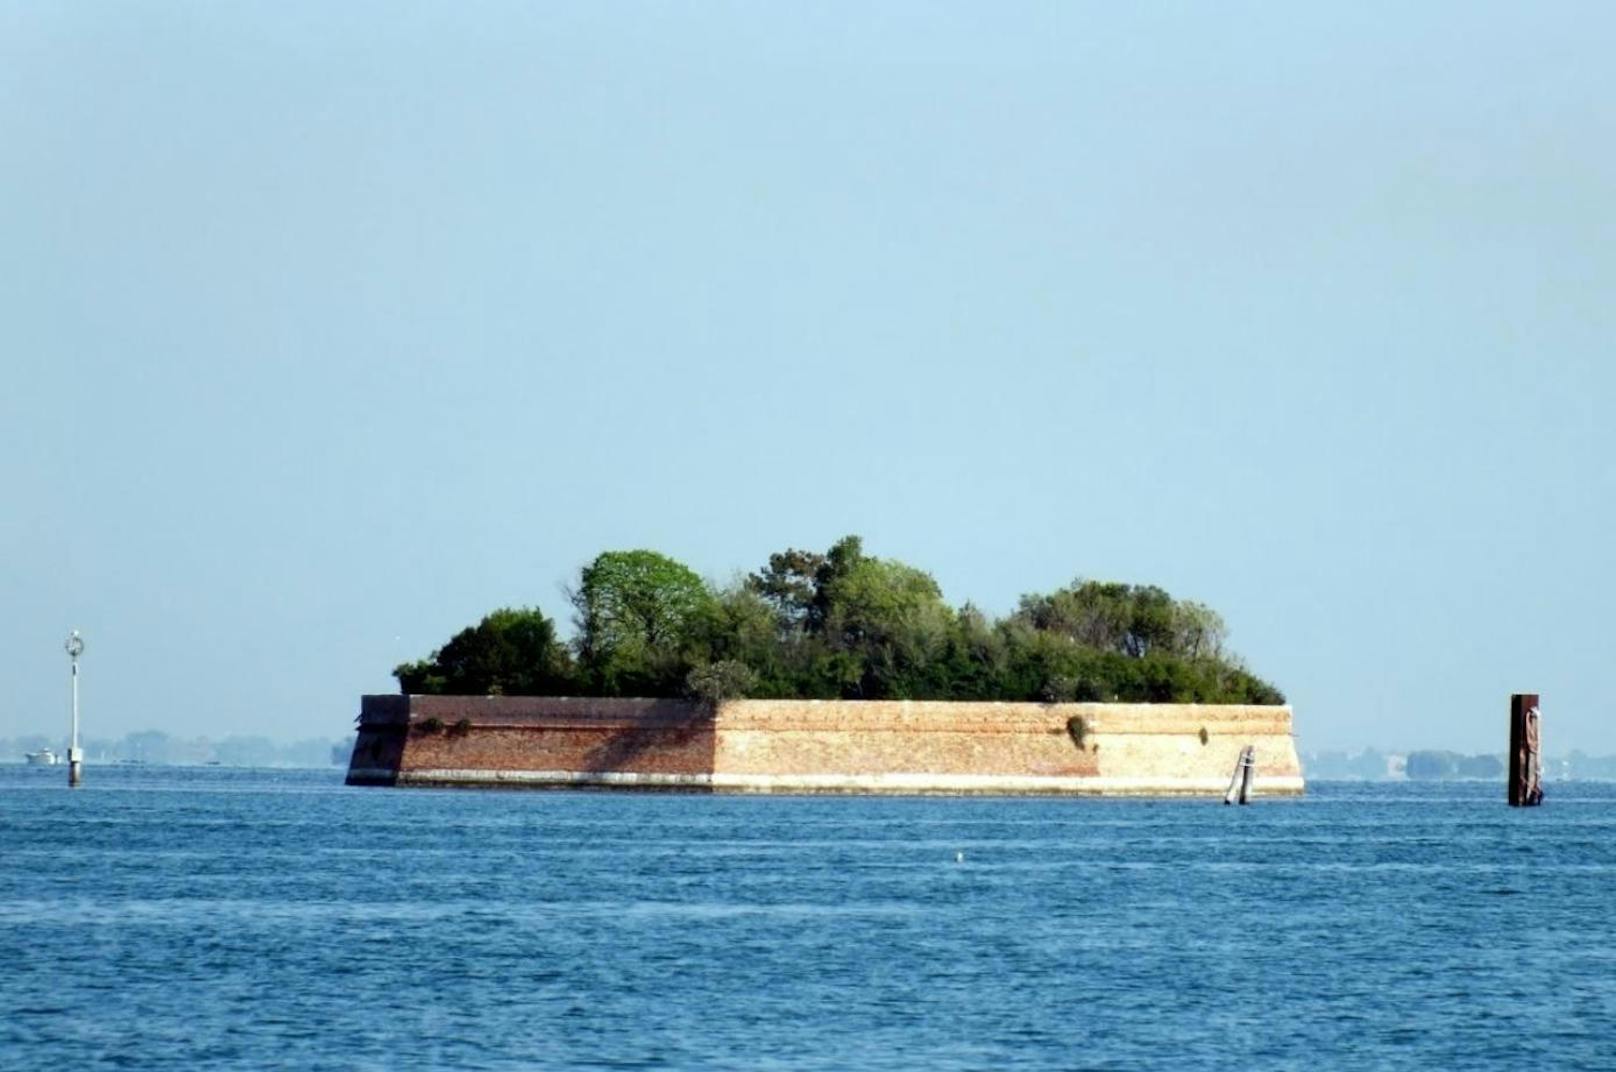 <b>L'Ottagono di Ca' Roman</b>
Ebenfalls in Venedig befindet sich dieses Oktagon. Es ist eines von fünf, die im 15. Jahrhundert zur Verteidigung von Venedig gebaut wurden. Es gibt einen kleinen Wachturm und einen Bunker auf der 1810 Quadratmeter grossen künstlichen Insel.